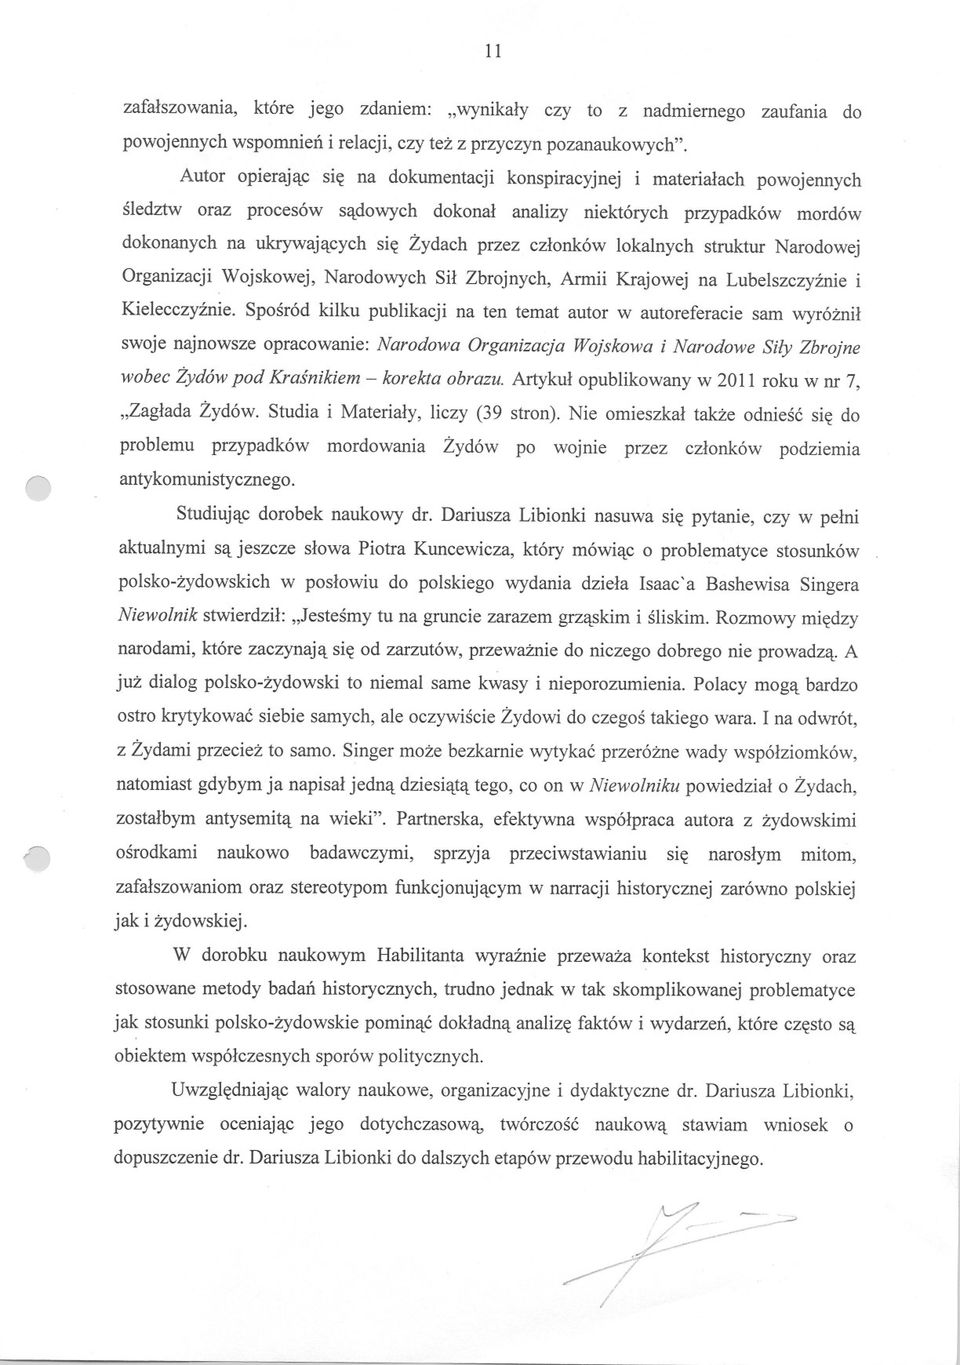 czlonków lokalnych struktur Narodowej Organizacji Wojskowej, Narodowych Sil Zbrojnych, Armii Krajowej na Lubelszczyznie i Kielecczyznie.